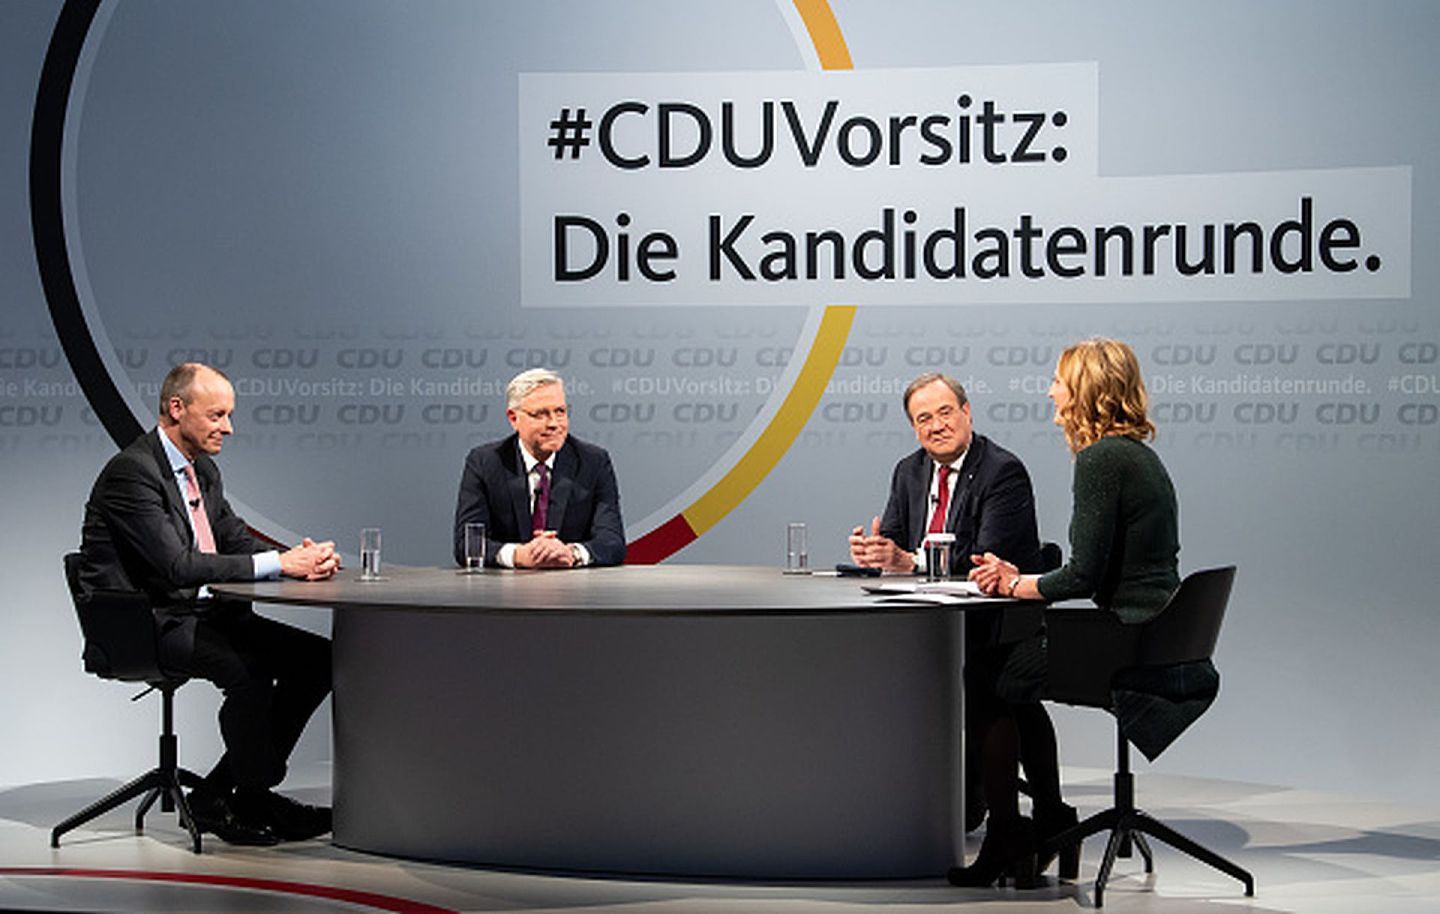 2020年12月14日，三位竞选新一届基民盟党魁之位的候选人在柏林基民盟总部参加与基民盟党员的在线互动。从左至右依次为默茨、勒特根以及拉舍特。（Getty Images）